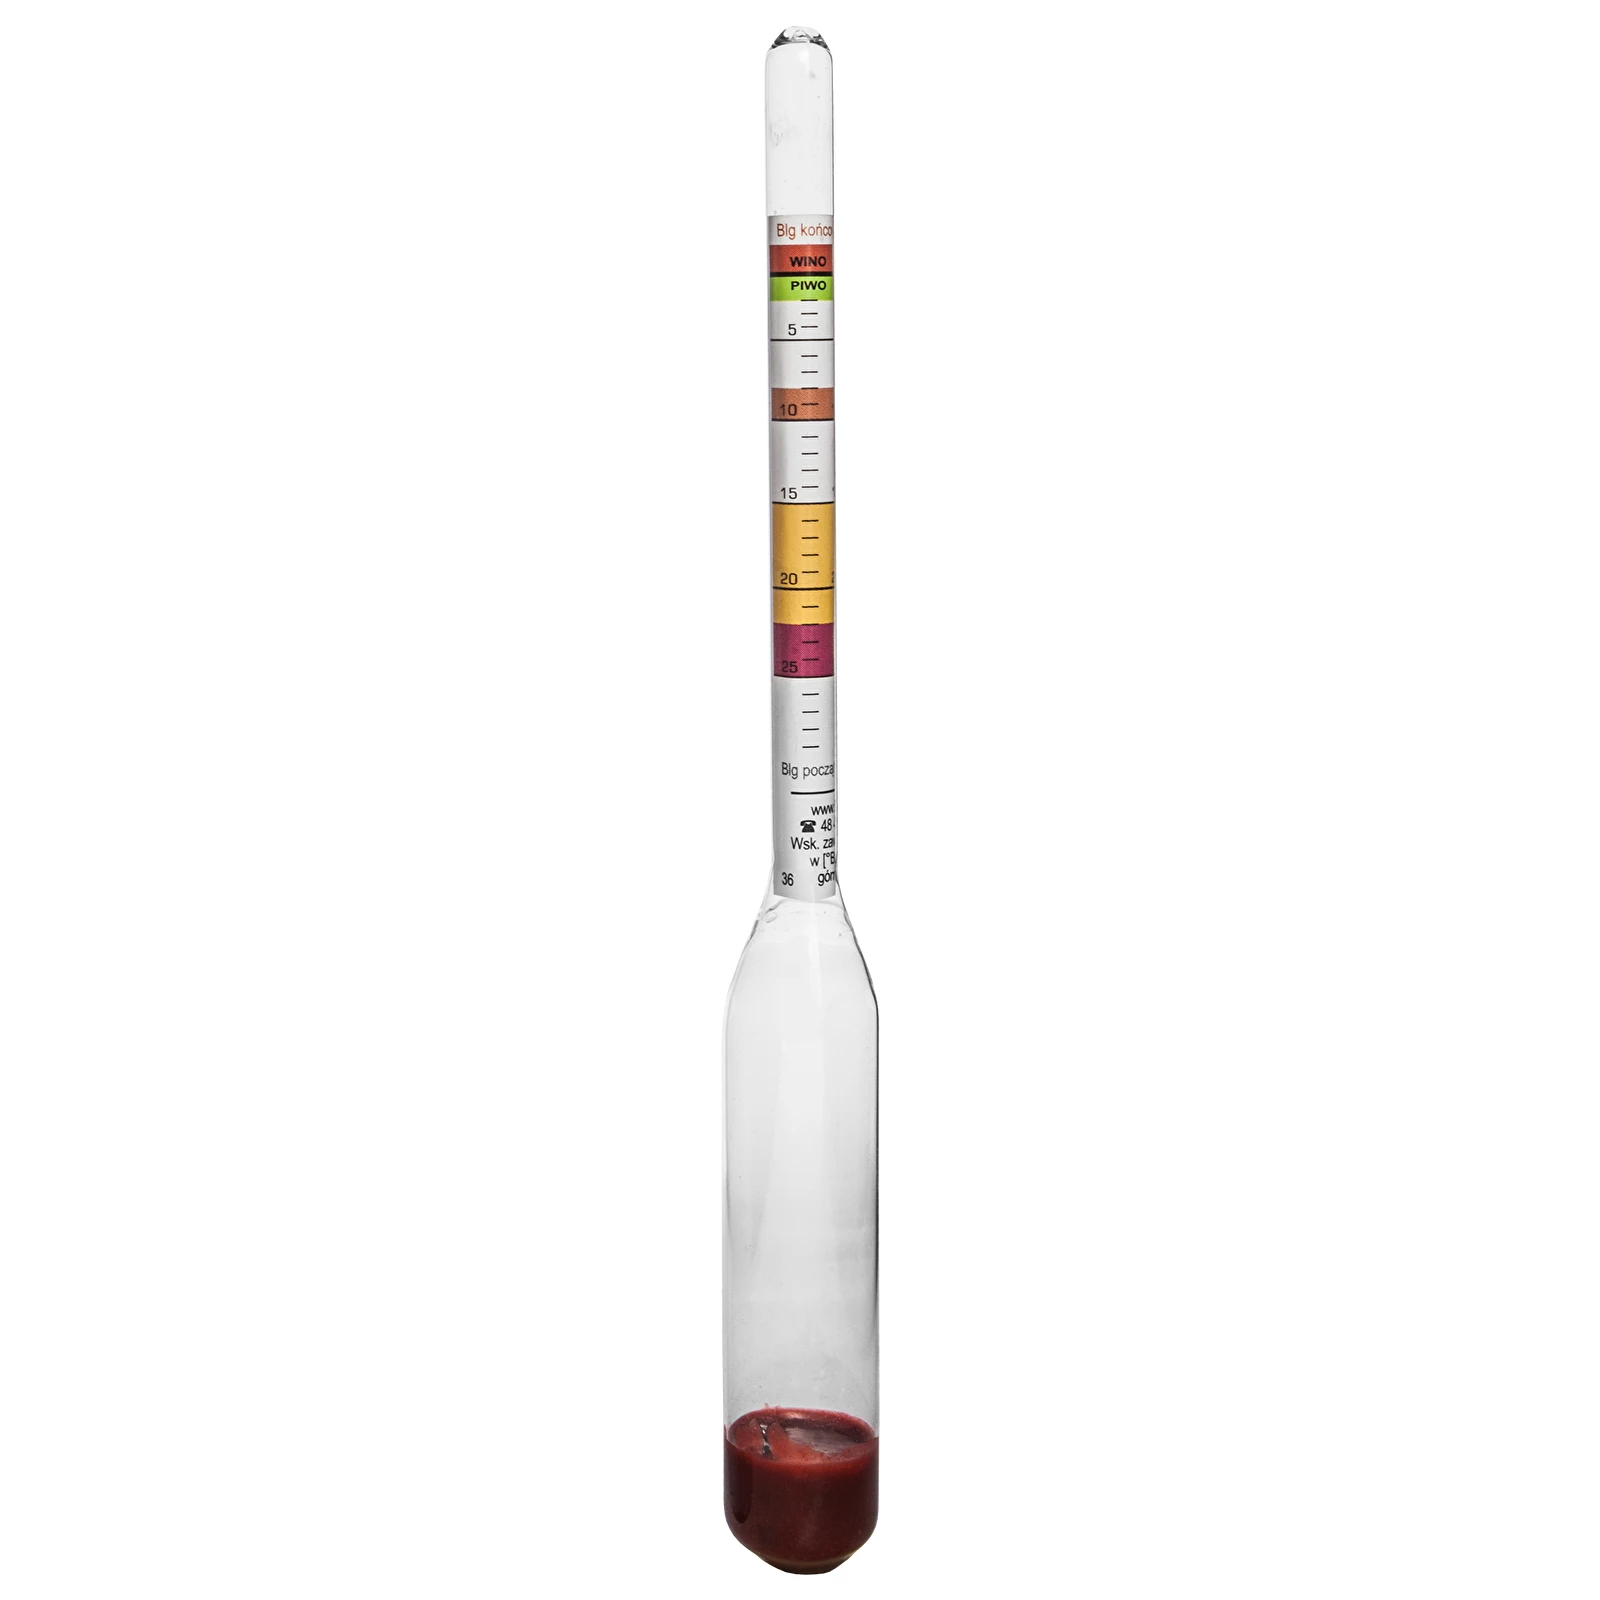 0.9-1.0 Vinification Alcool Sugar Meter Hydromètre Double Color Densimètre